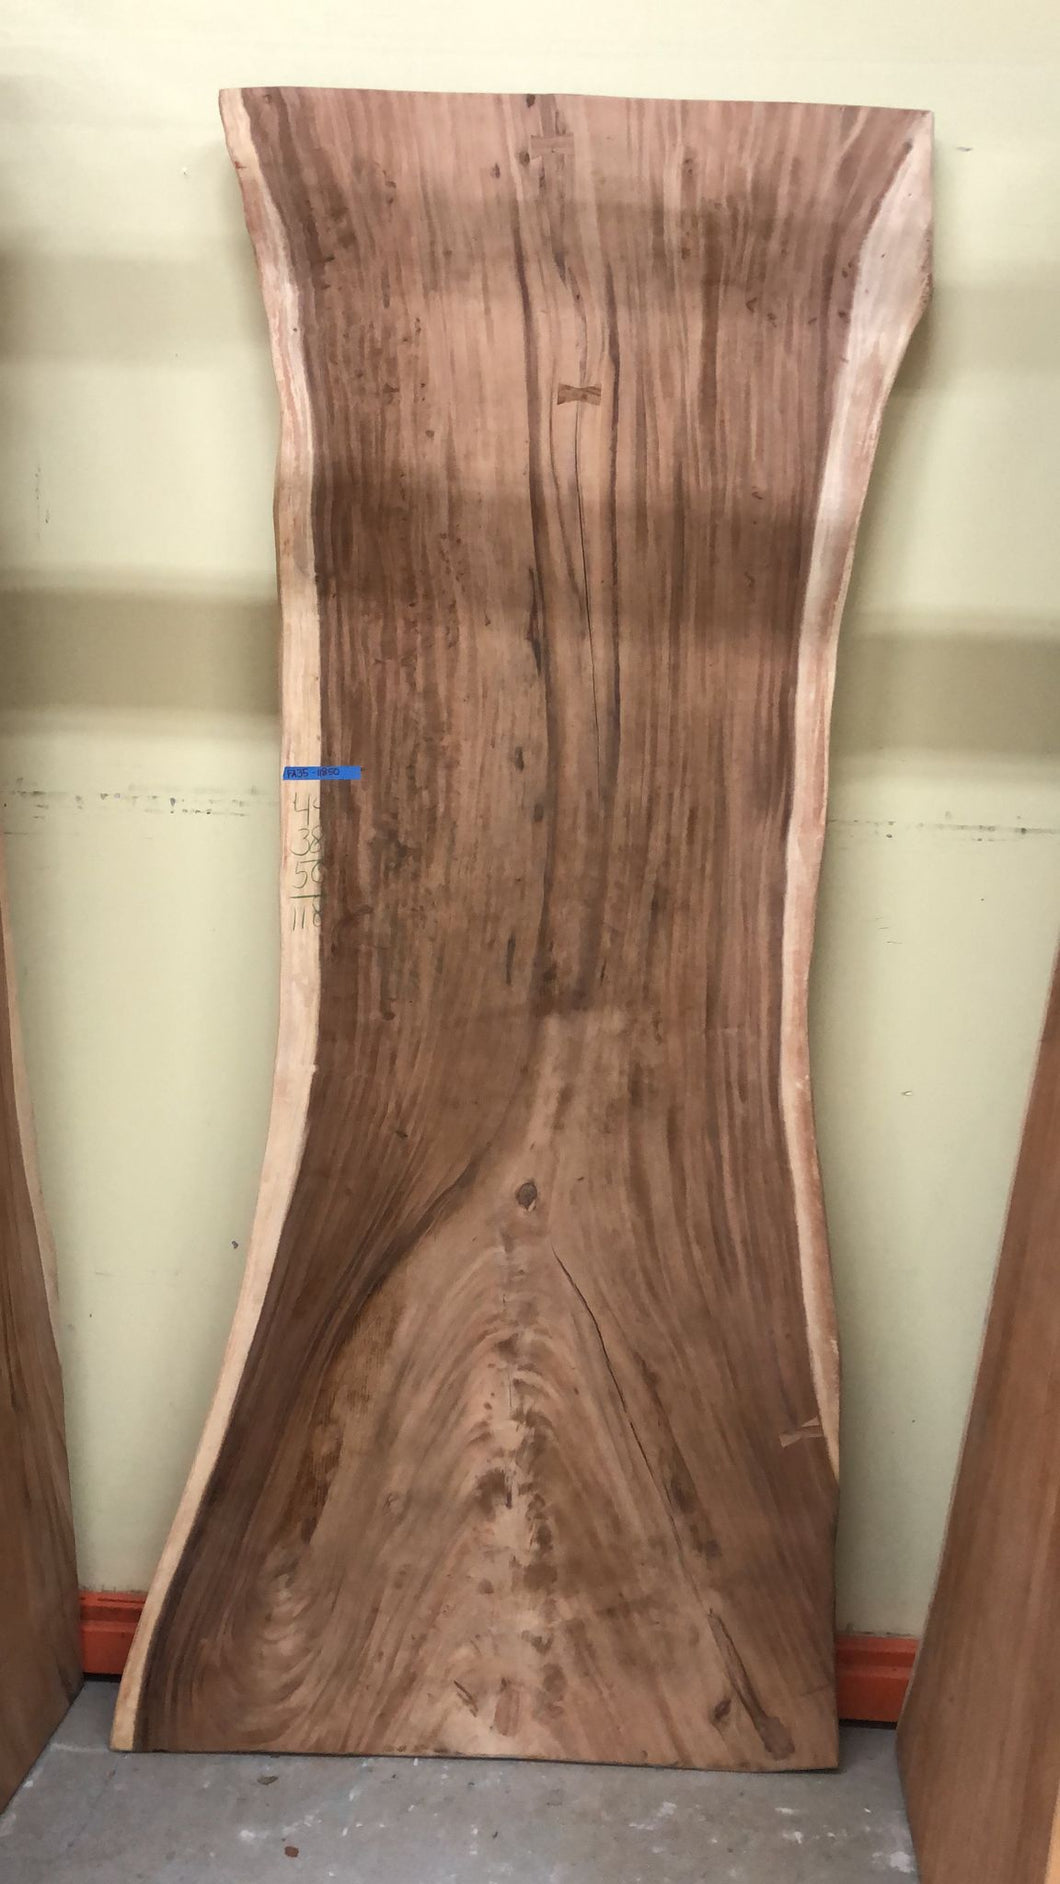 FA35-11850 Live edge acacia wood (single slab)